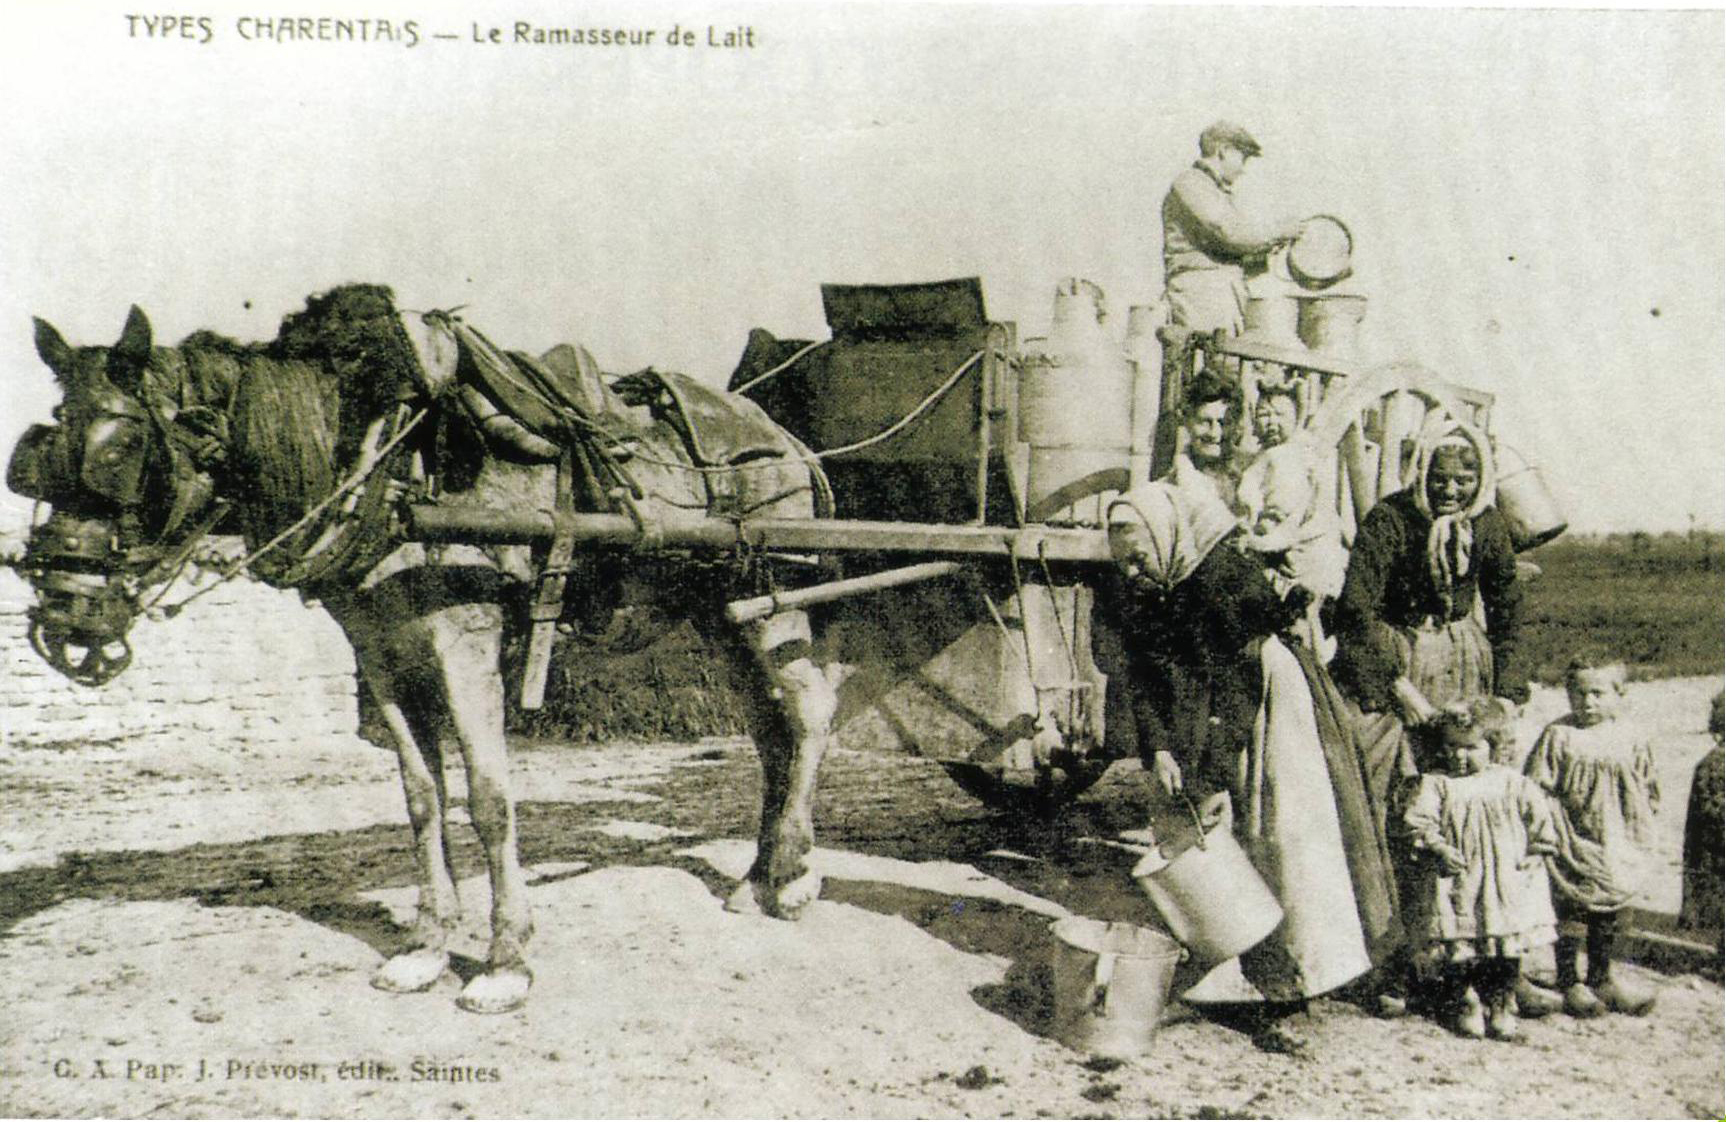 Le collecteur de lait aunis 1920